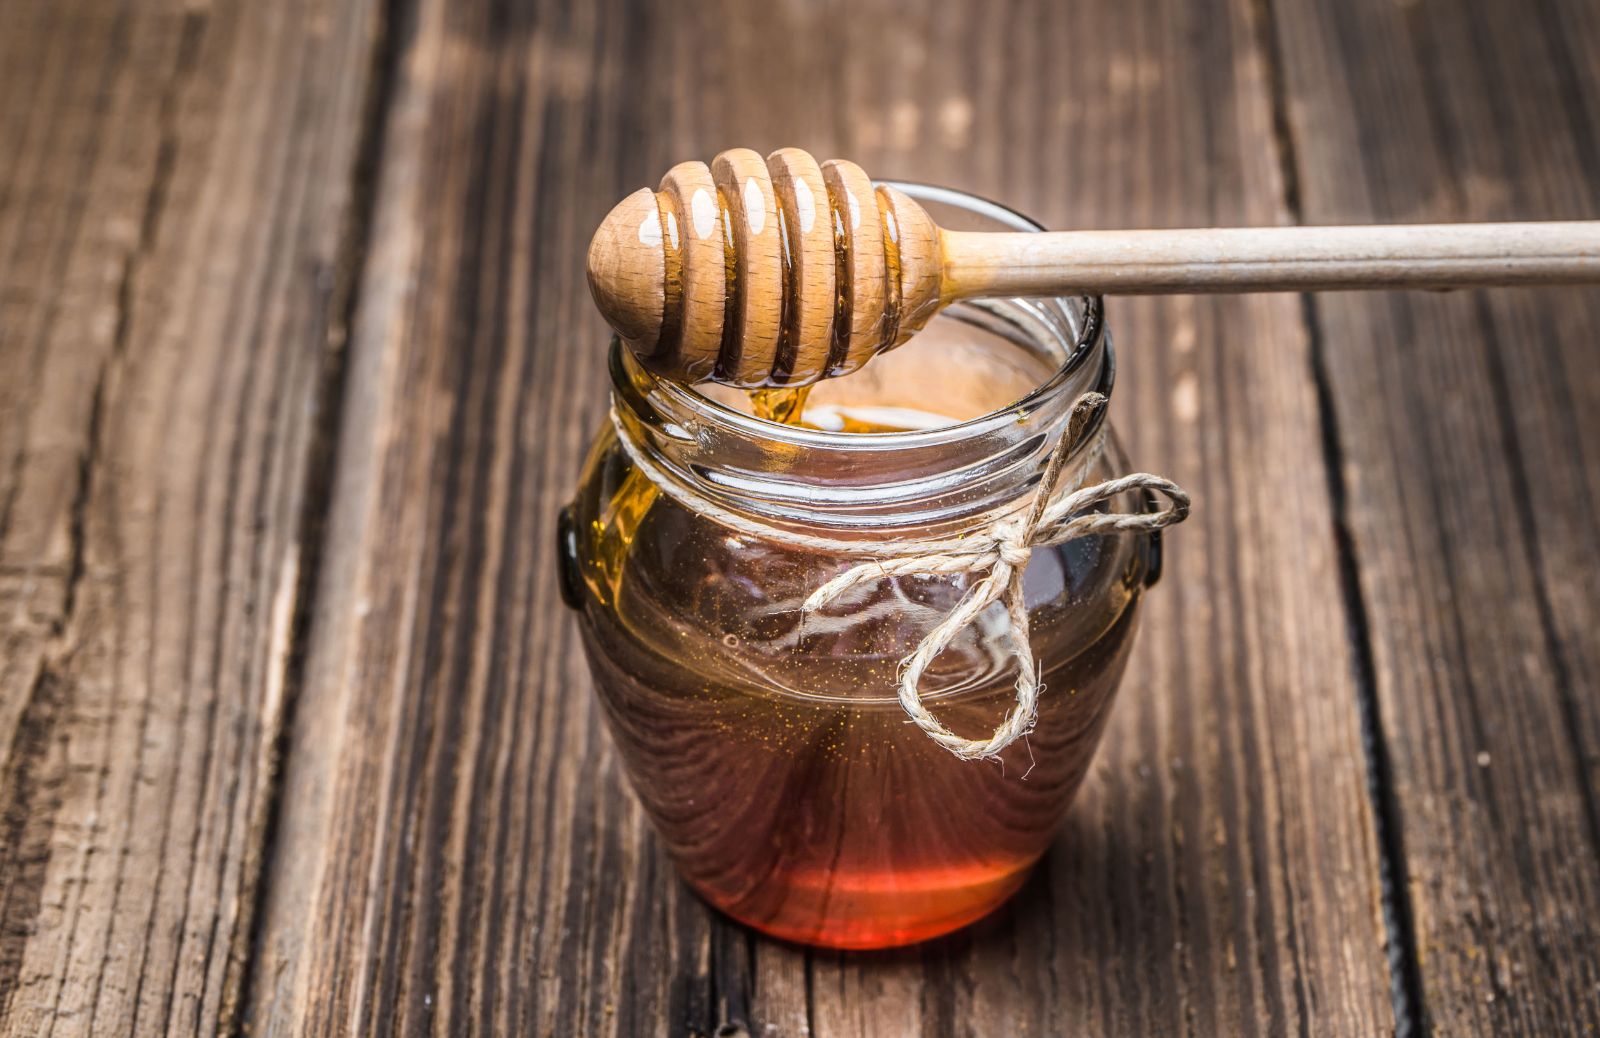 Miele di melata: qual è la differenza con il miele di nettare?